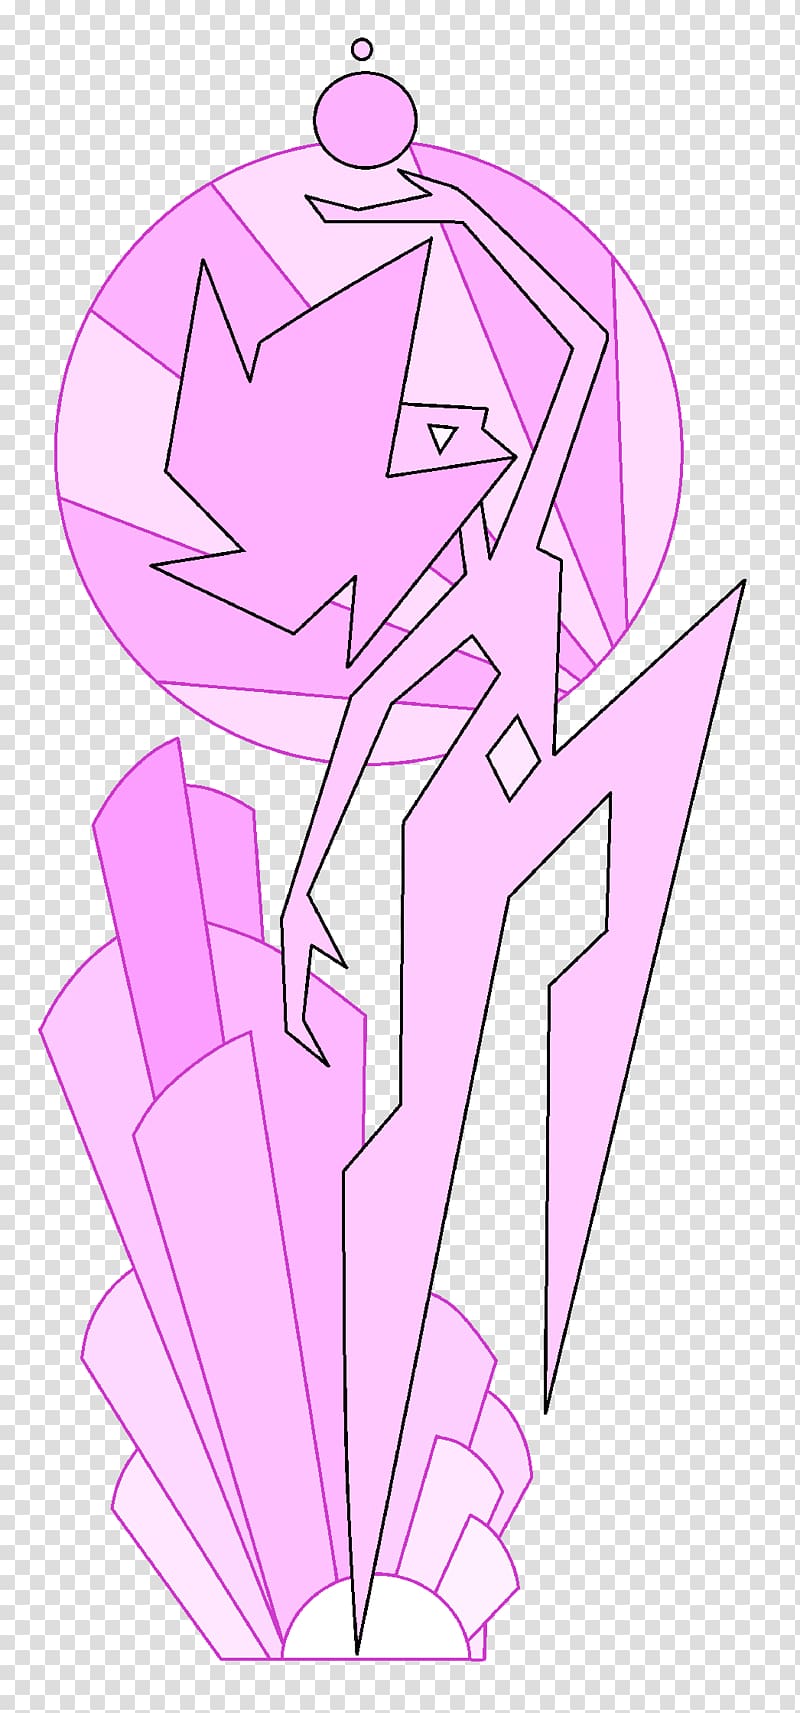 Pink diamond Color Rose quartz , diamond transparent background PNG clipart